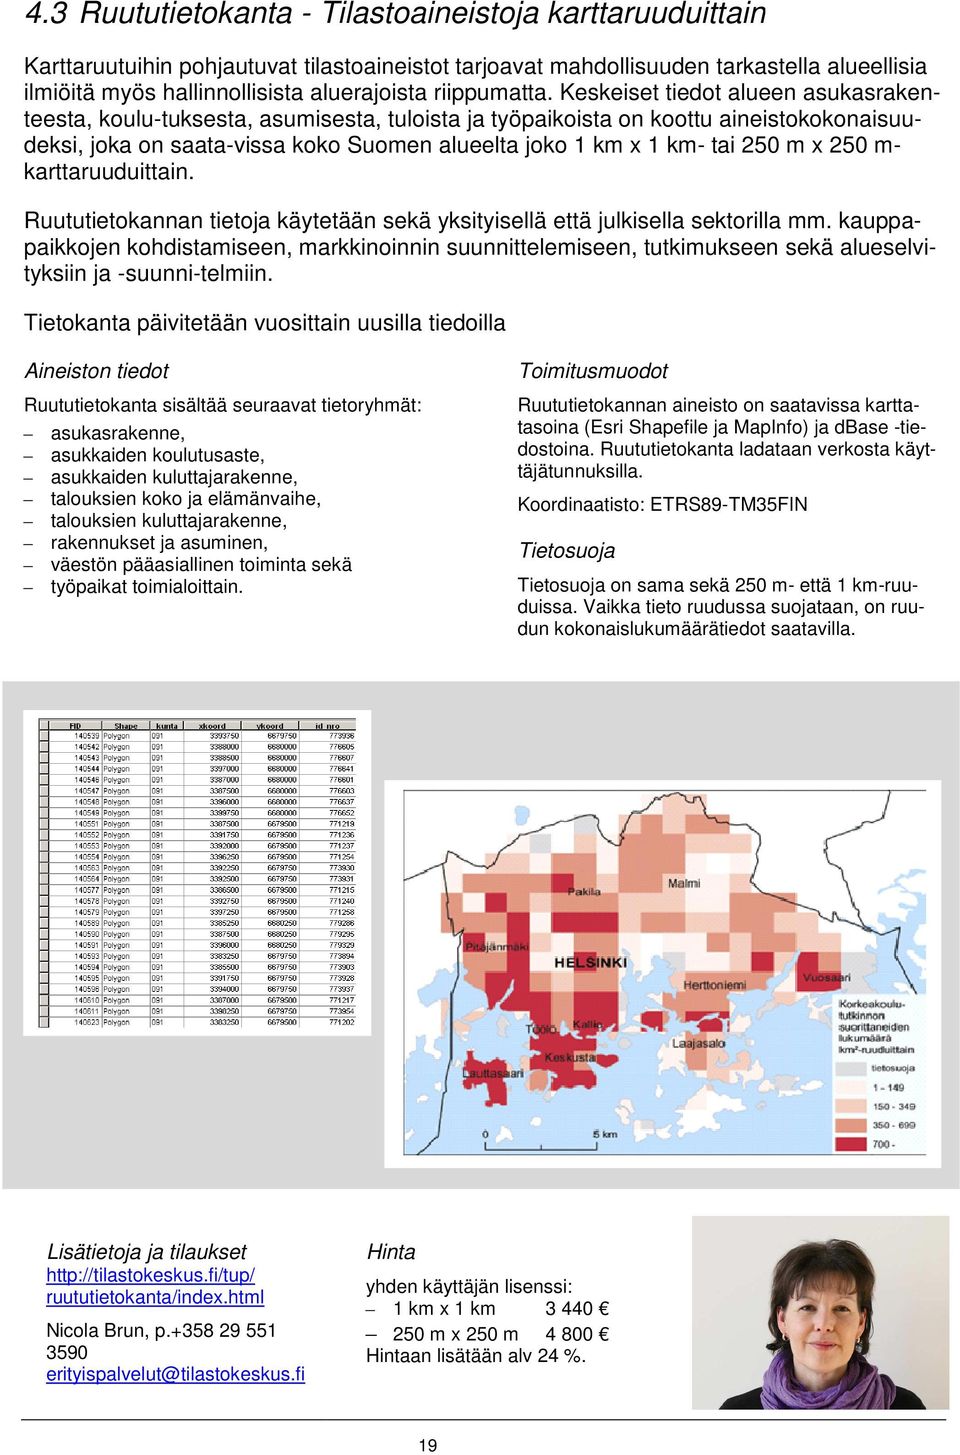 Keskeiset tiedot alueen asukasraken- teesta, koulu-tuksesta, asumisesta, tuloista ja työpaikoista on koottu aineistokokonaisuutai 250 m x 250 m- deksi, joka on saata-vissa koko Suomen alueelta joko 1